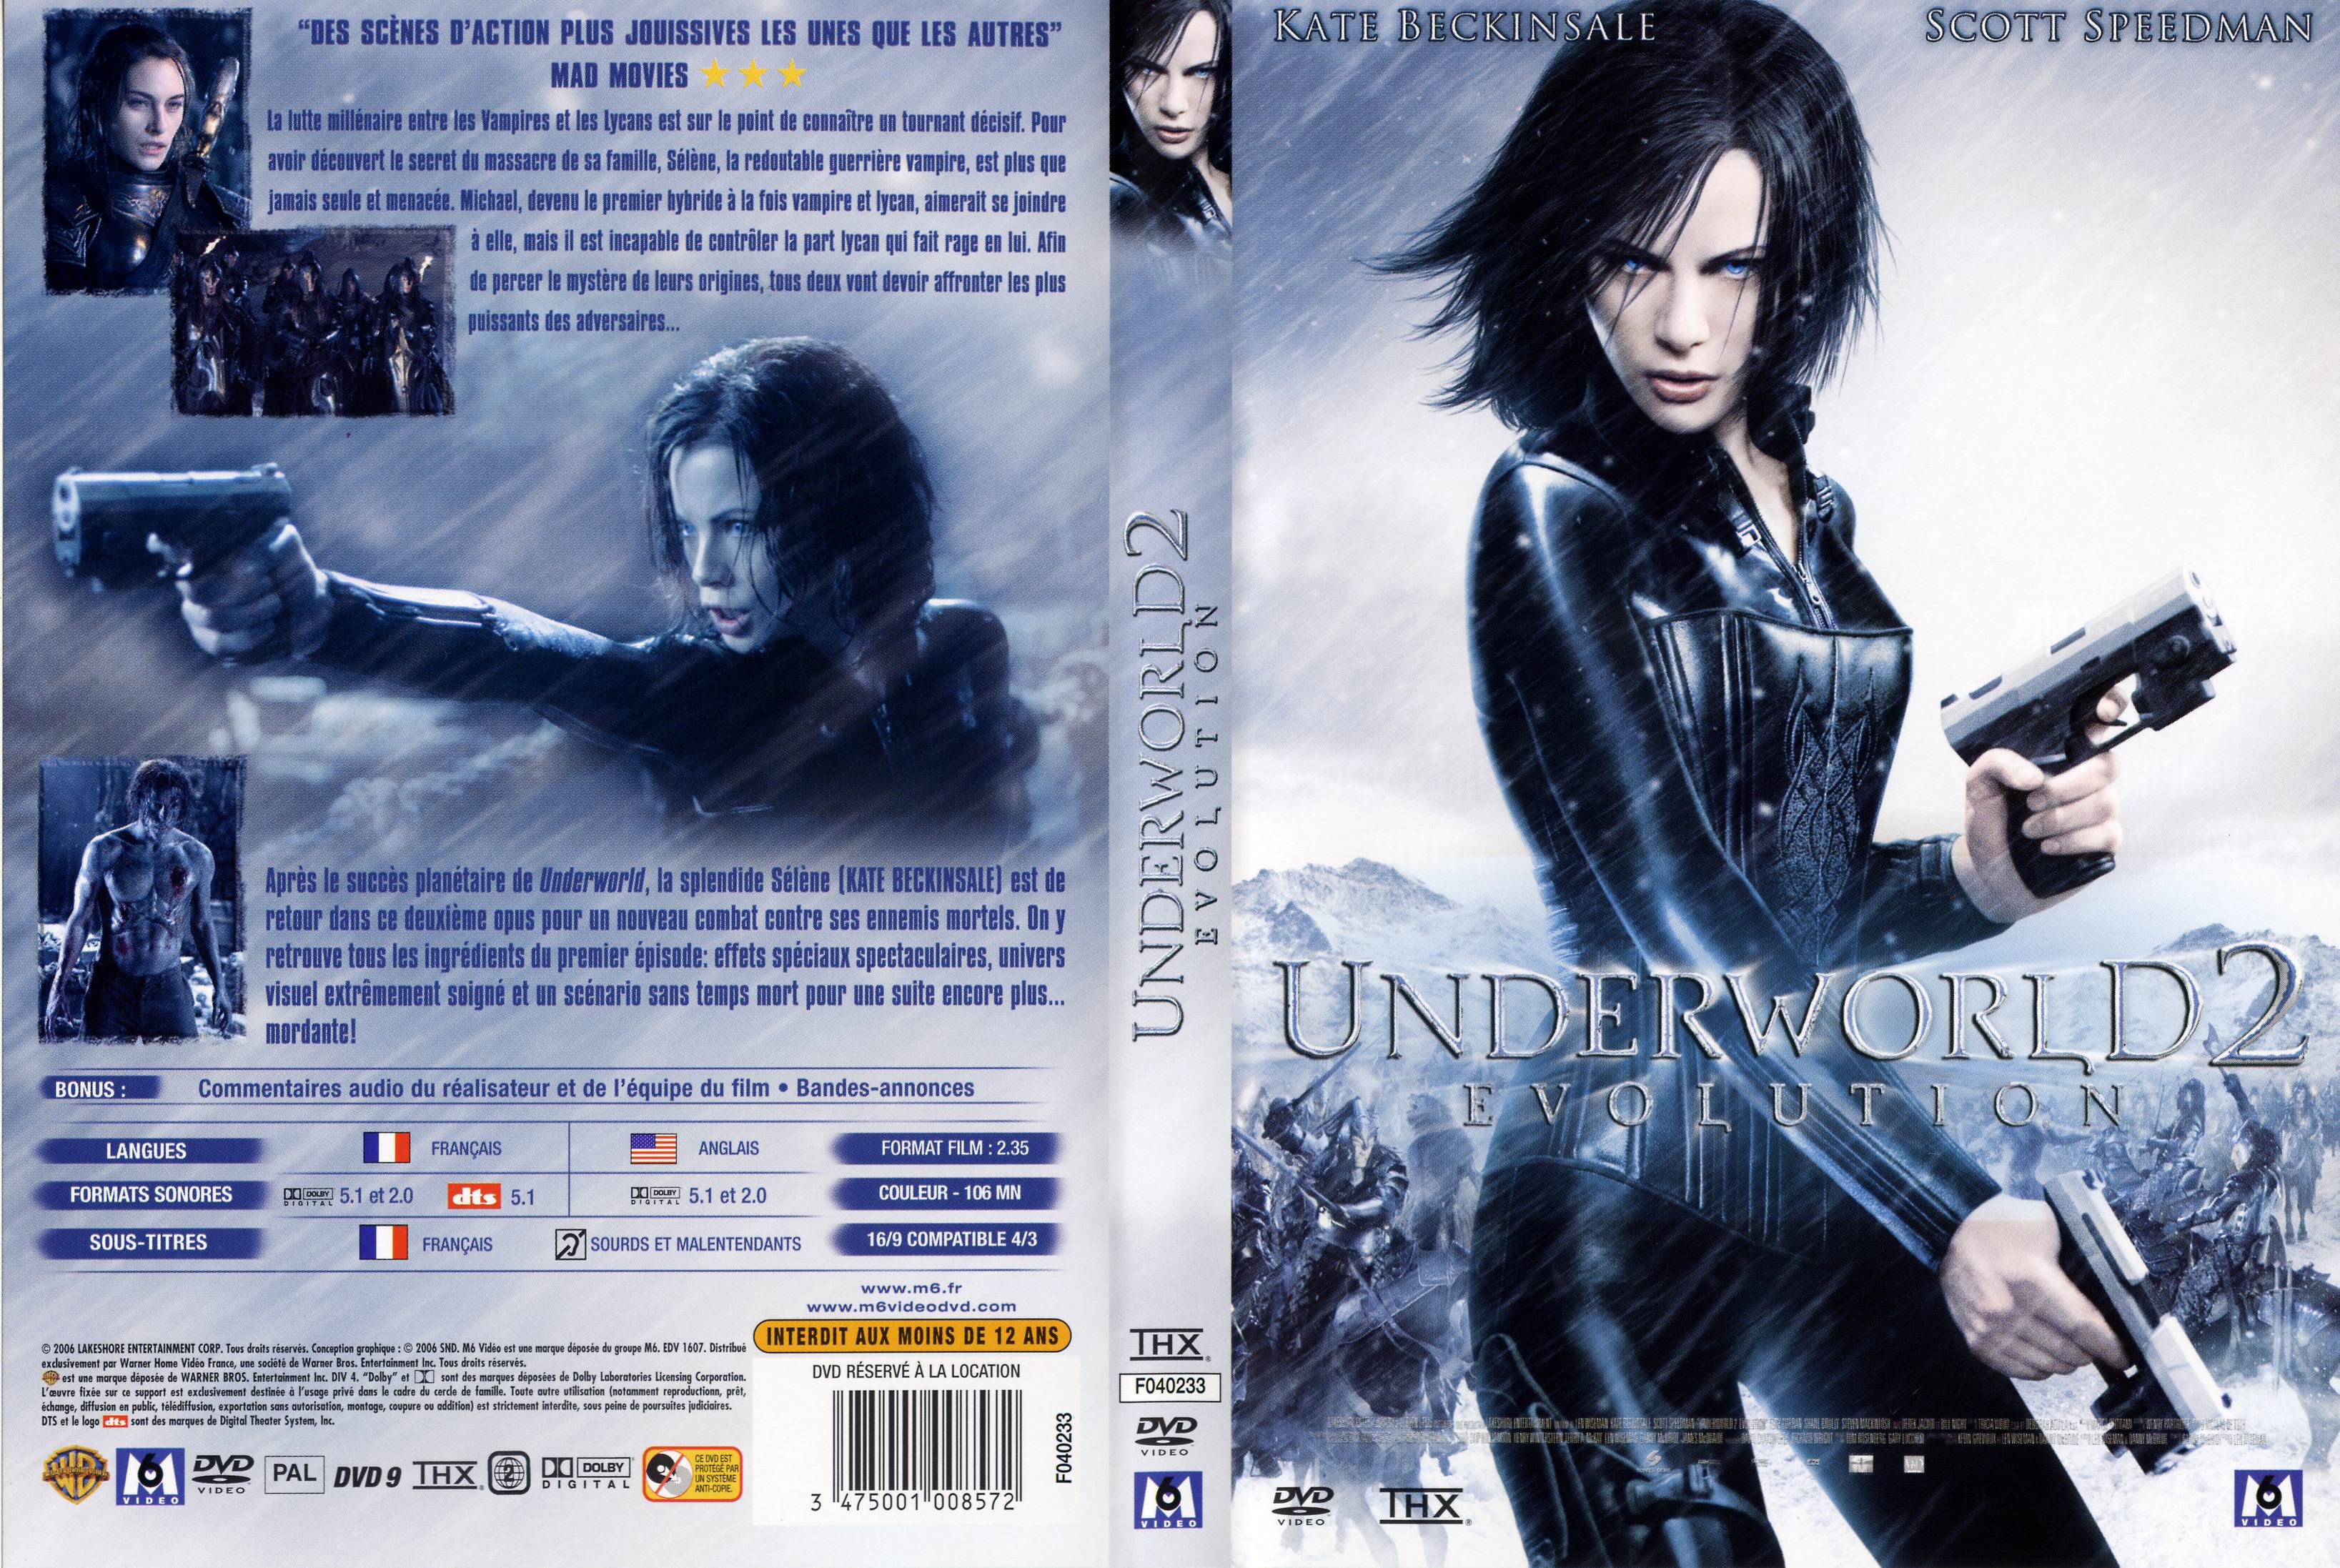 Jaquette DVD Underworld evolution